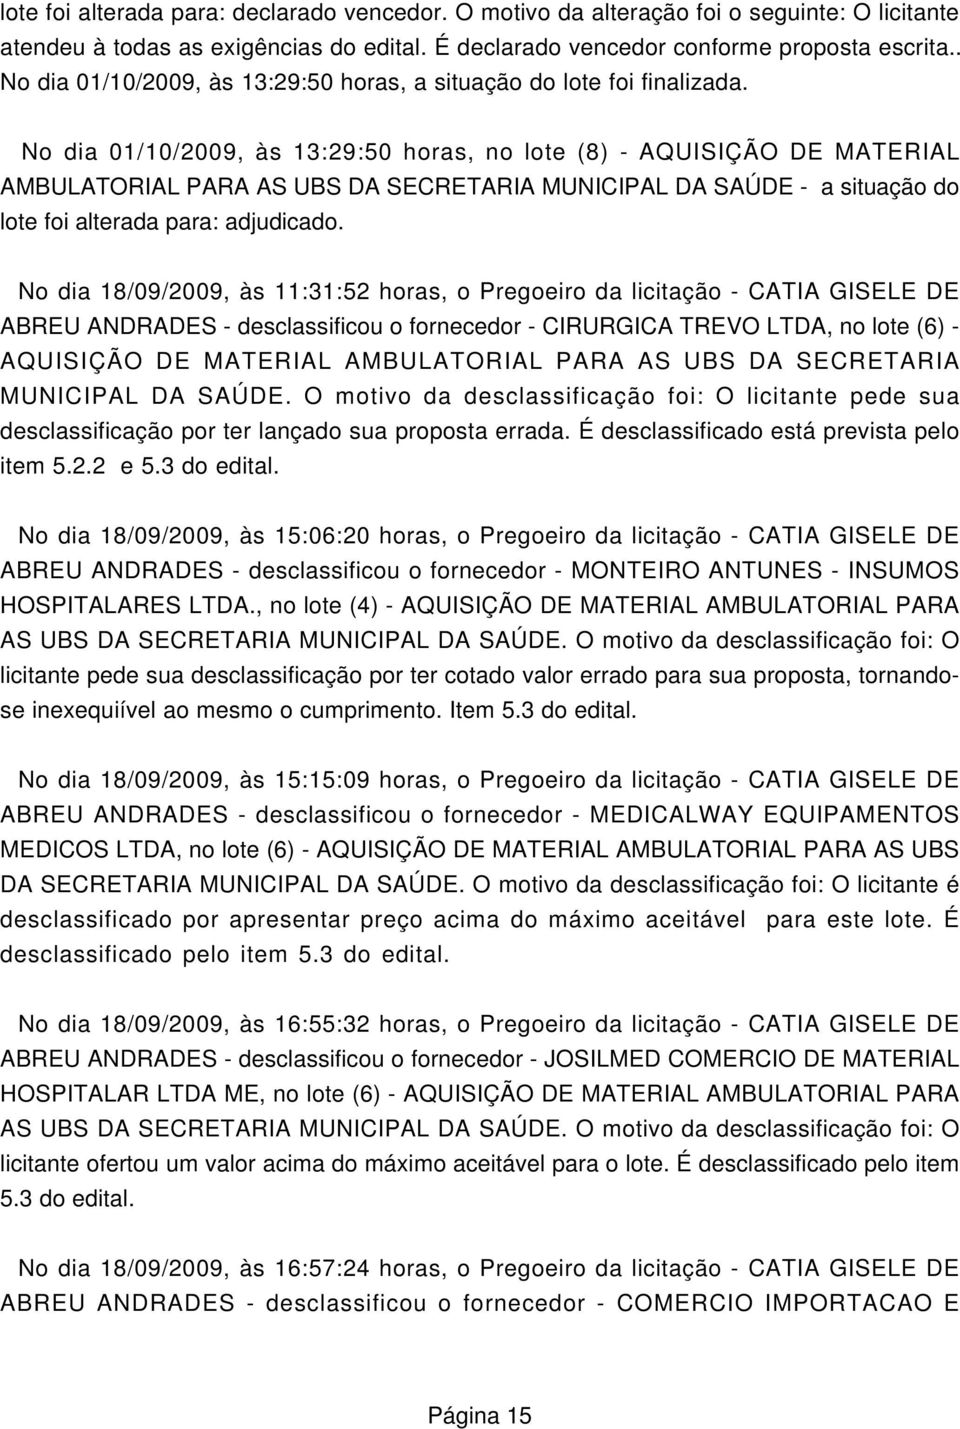 No dia 18/09/2009, às 11:31:52 horas, o Pregoeiro da licitação - CATIA GISELE DE ABREU ANDRADES - desclassificou o fornecedor - CIRURGICA TREVO LTDA, no lote (6) - AQUISIÇÃO DE MATERIAL AMBULATORIAL